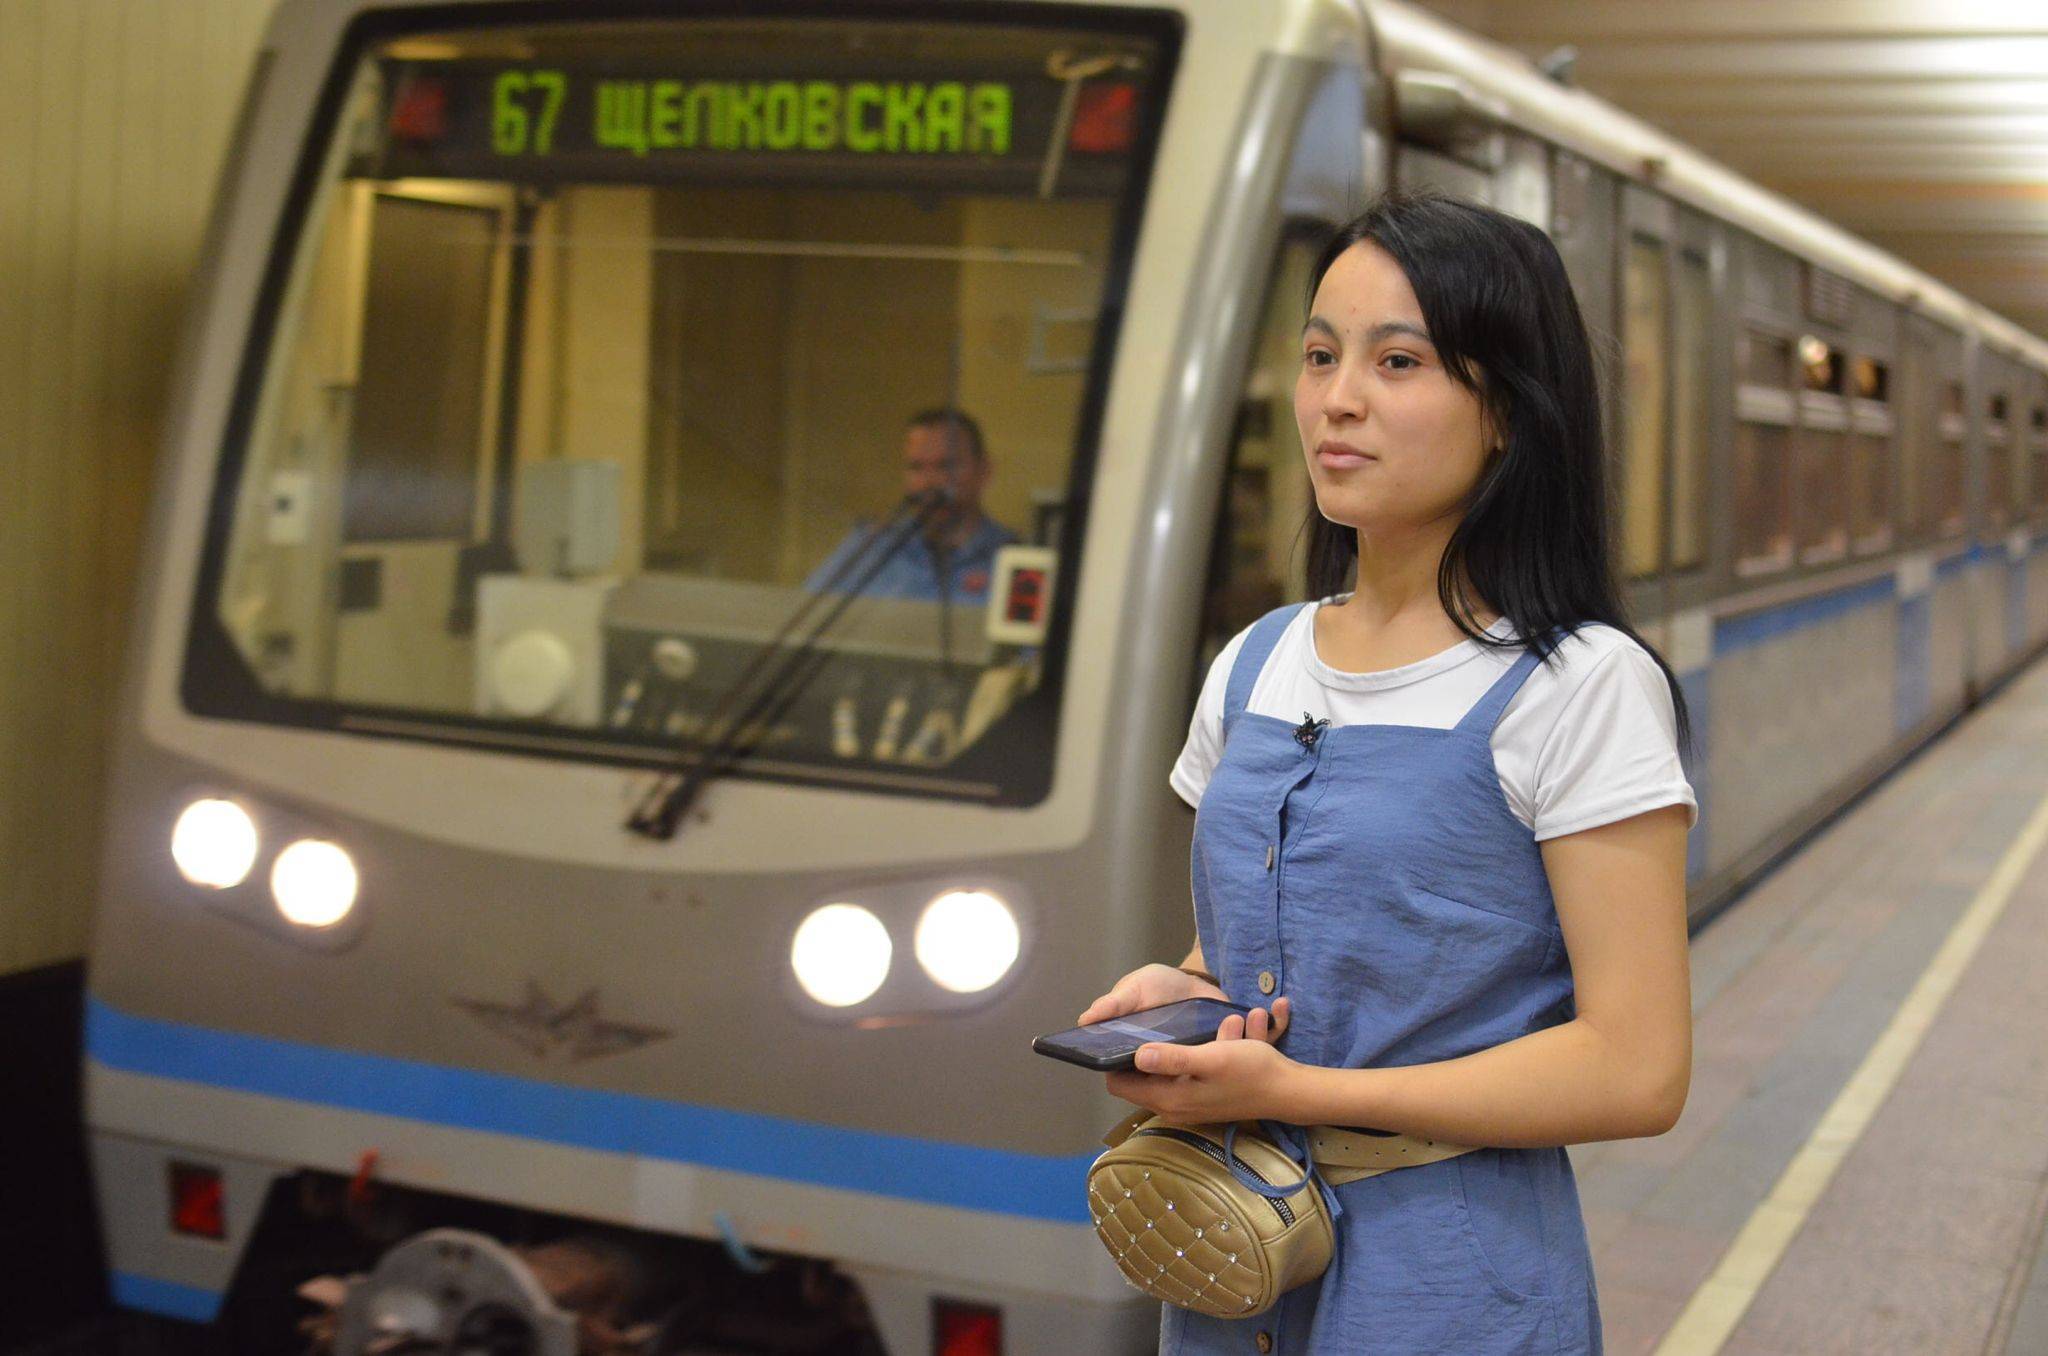 Лайфхак: как пользоваться wi-fi в московском метро и не смотреть рекламу